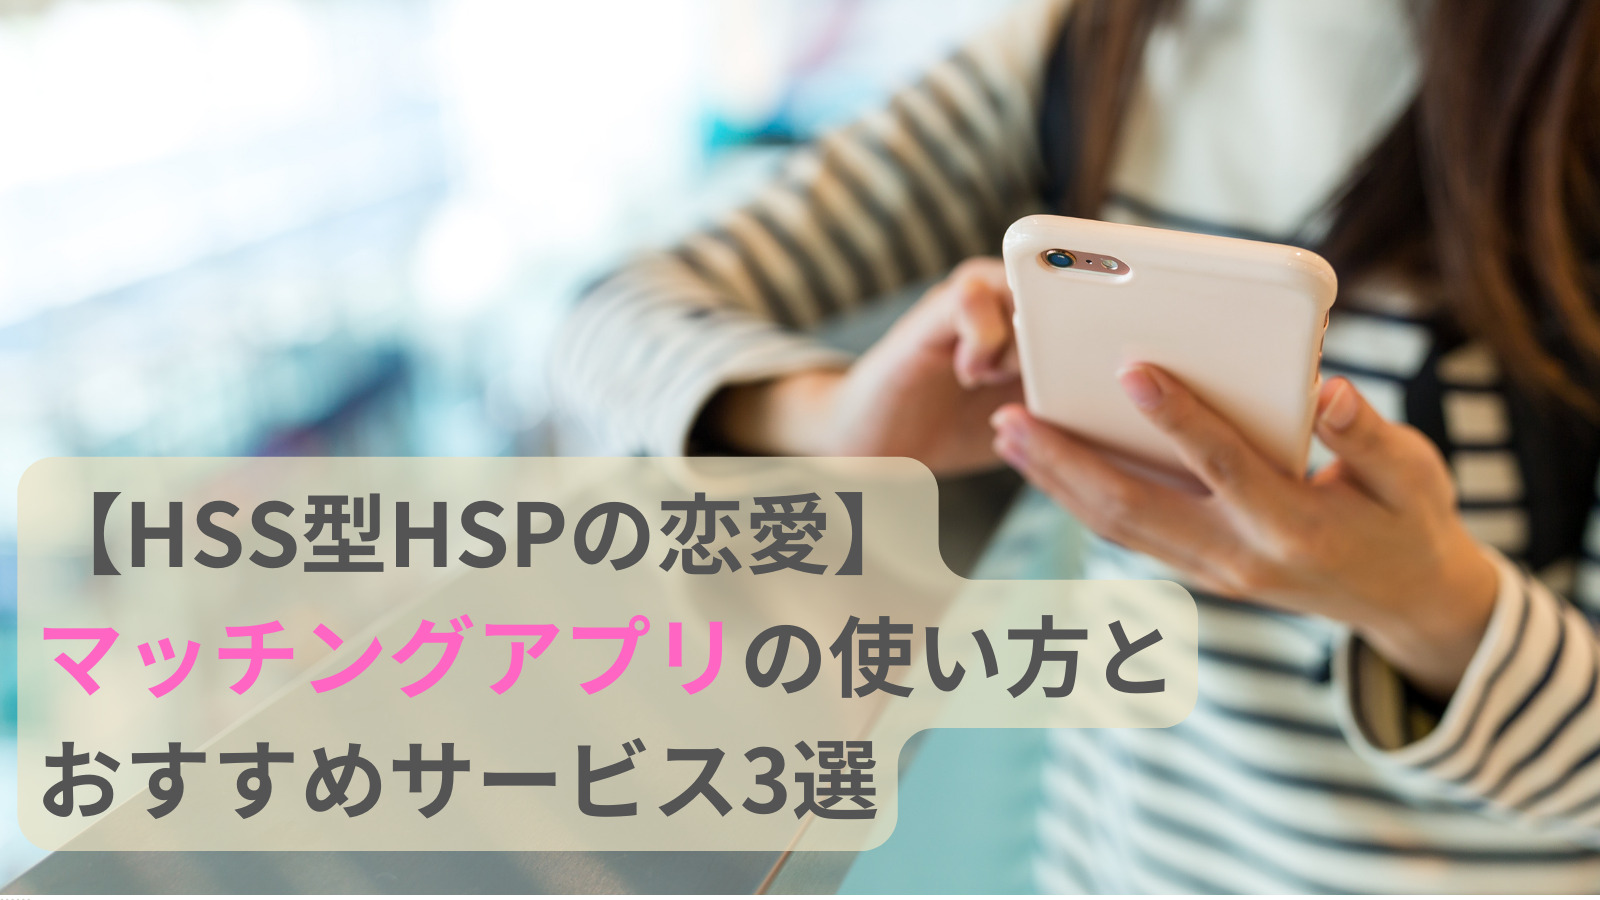 【HSS型HSPの恋愛】マッチングアプリの使い方とおすすめサービス3選